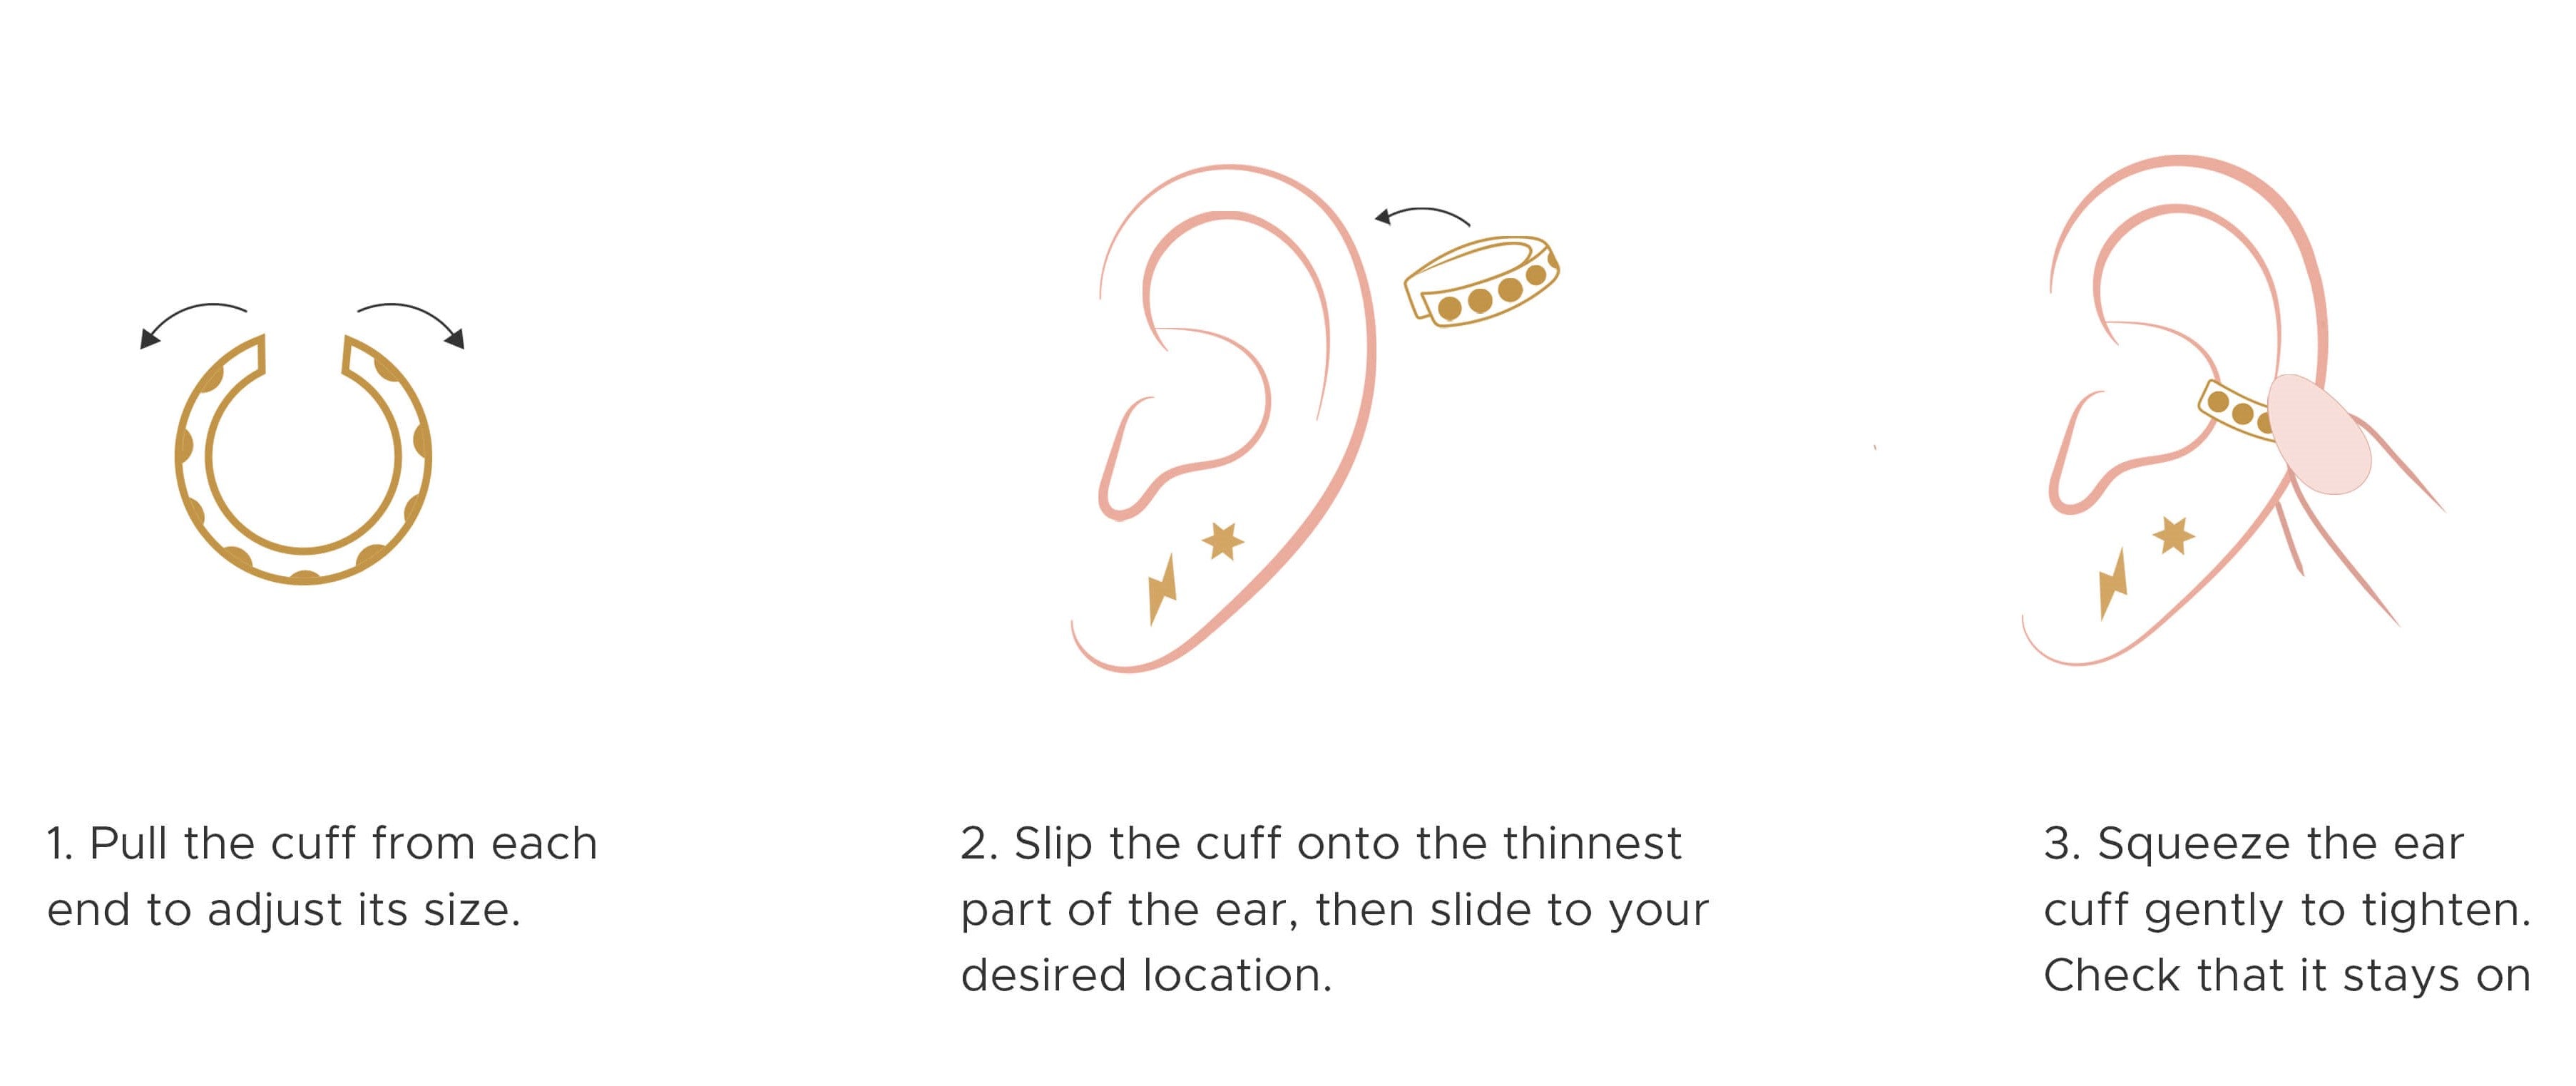 How to wear Ear Cuffs